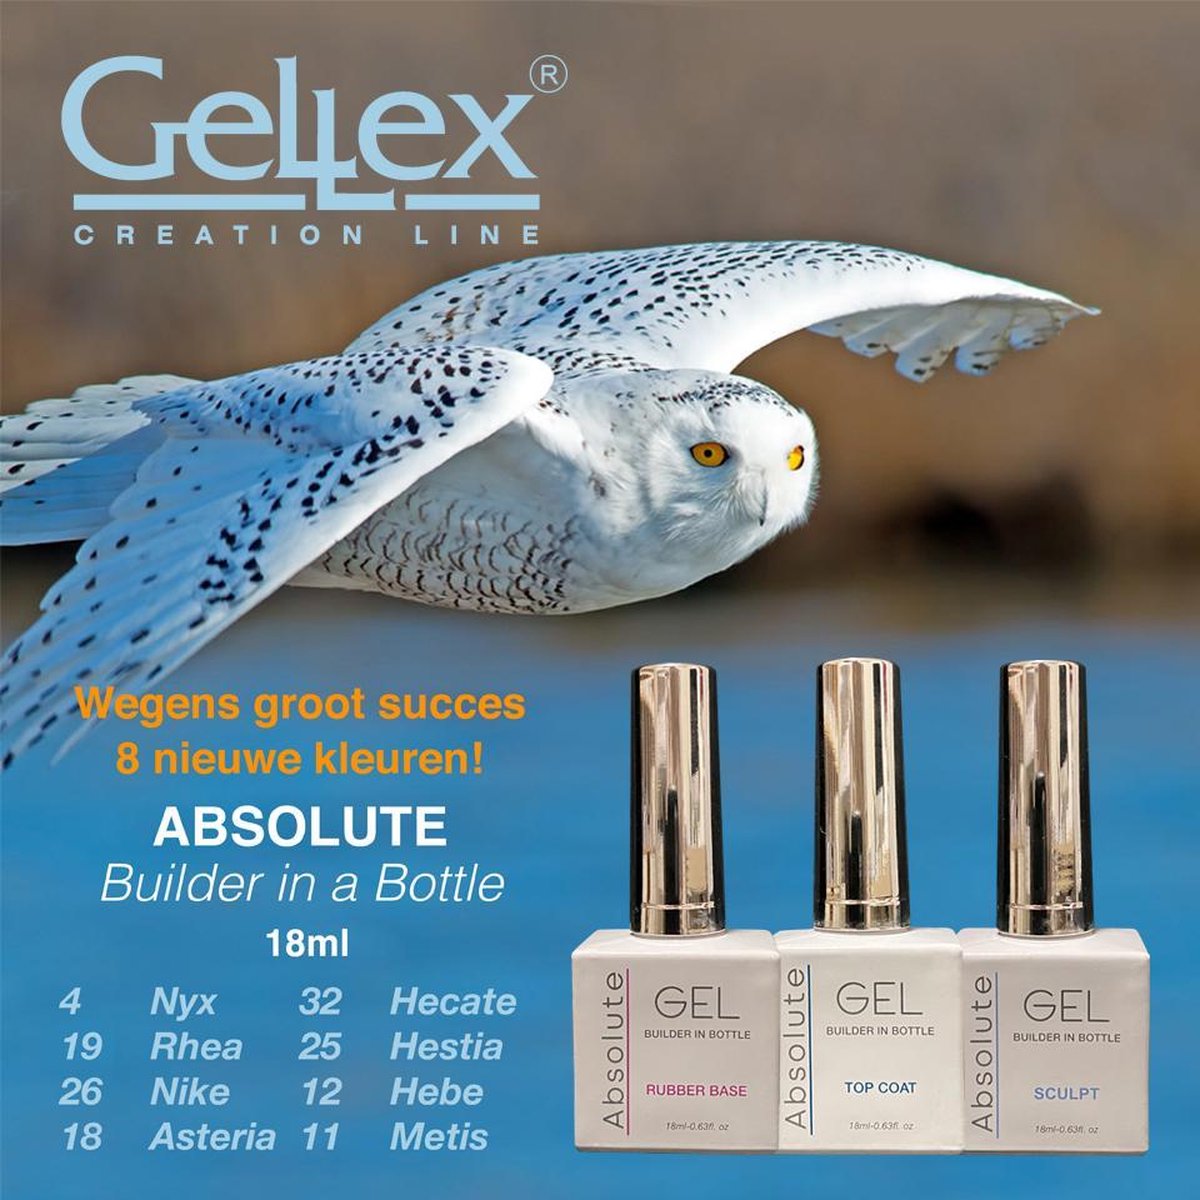 Gellex - SET Absolute Builder Gel in a bottle #25 ''Hestia'' -Gel Starterspakket 3x18ml - Gel Nagellakset- Gel nagels